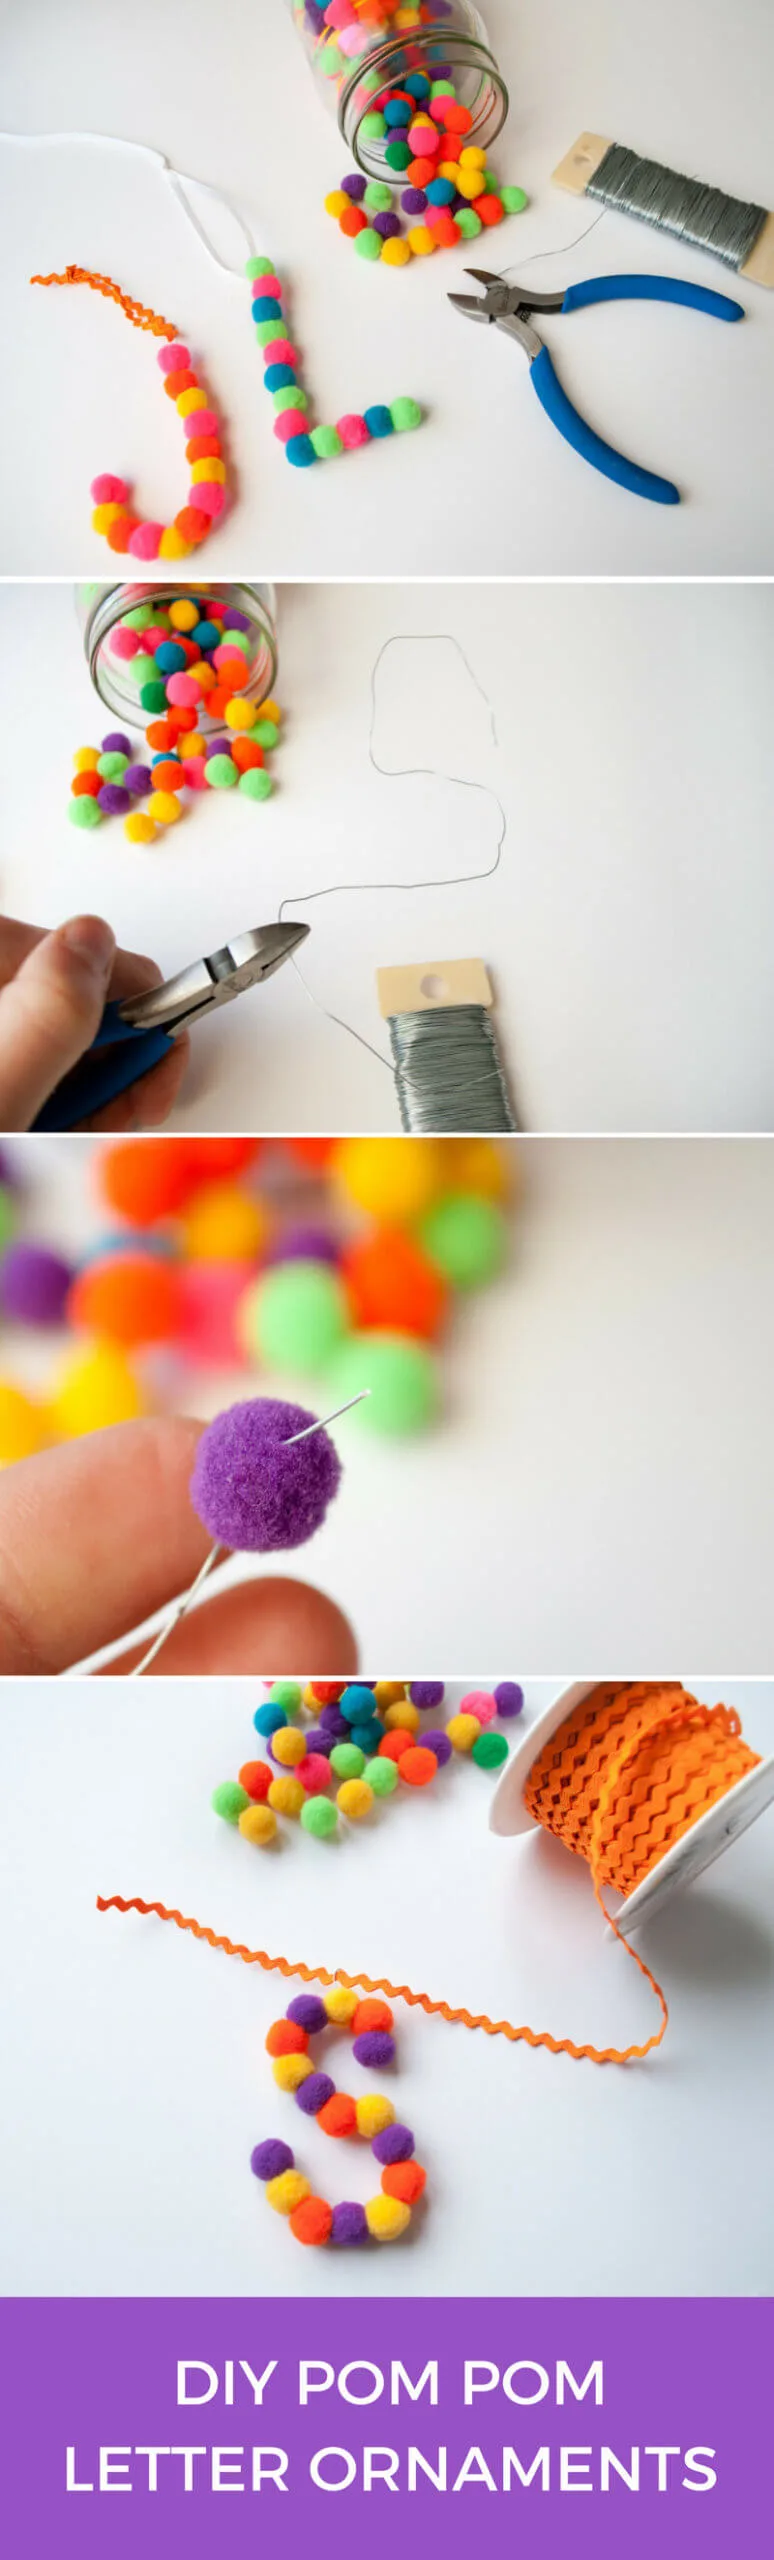 DIY letter ornaments using mini pom poms